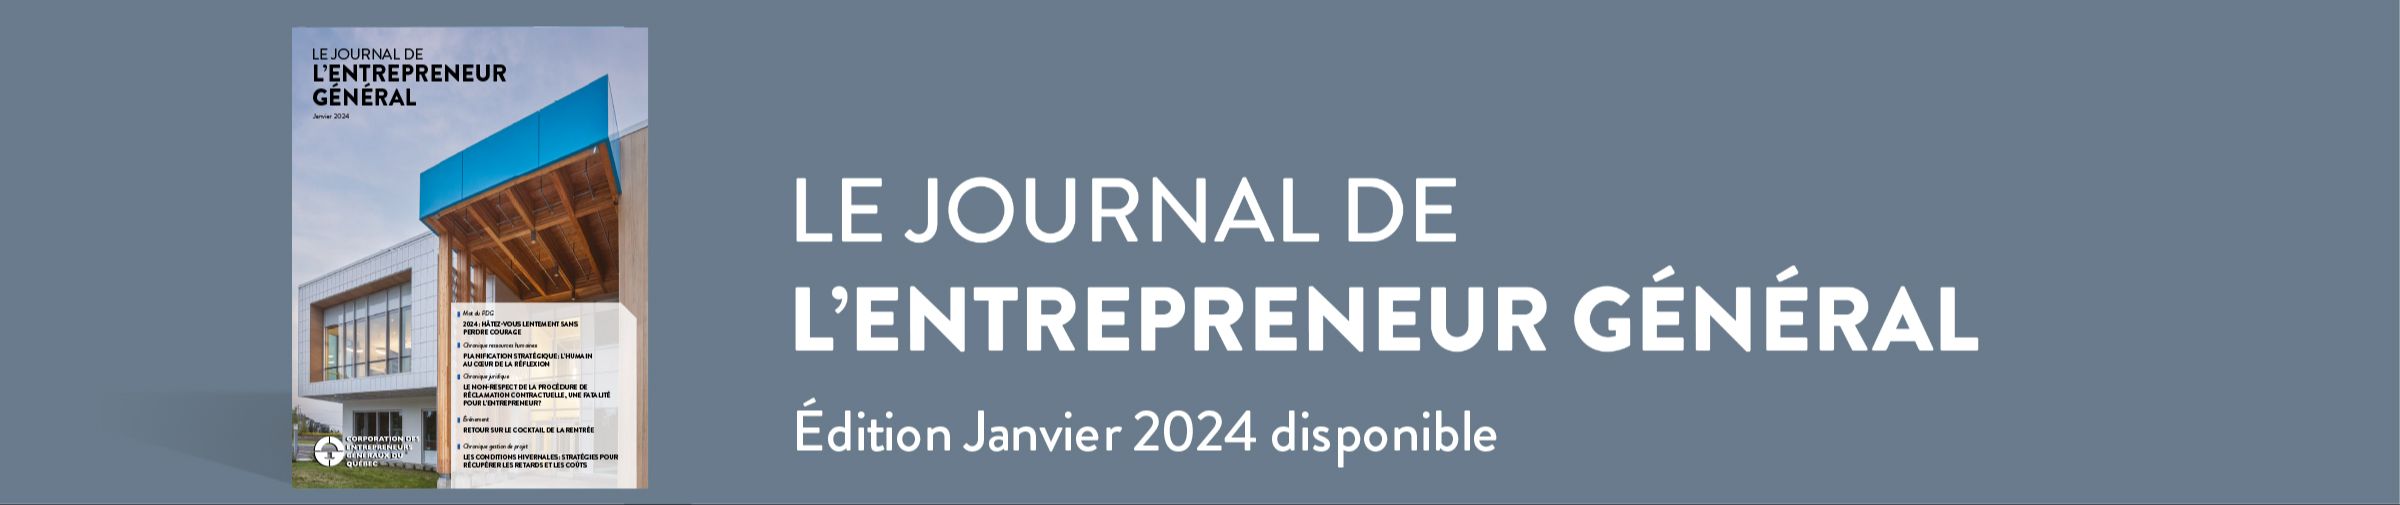 Journal de l'entrepreneur général